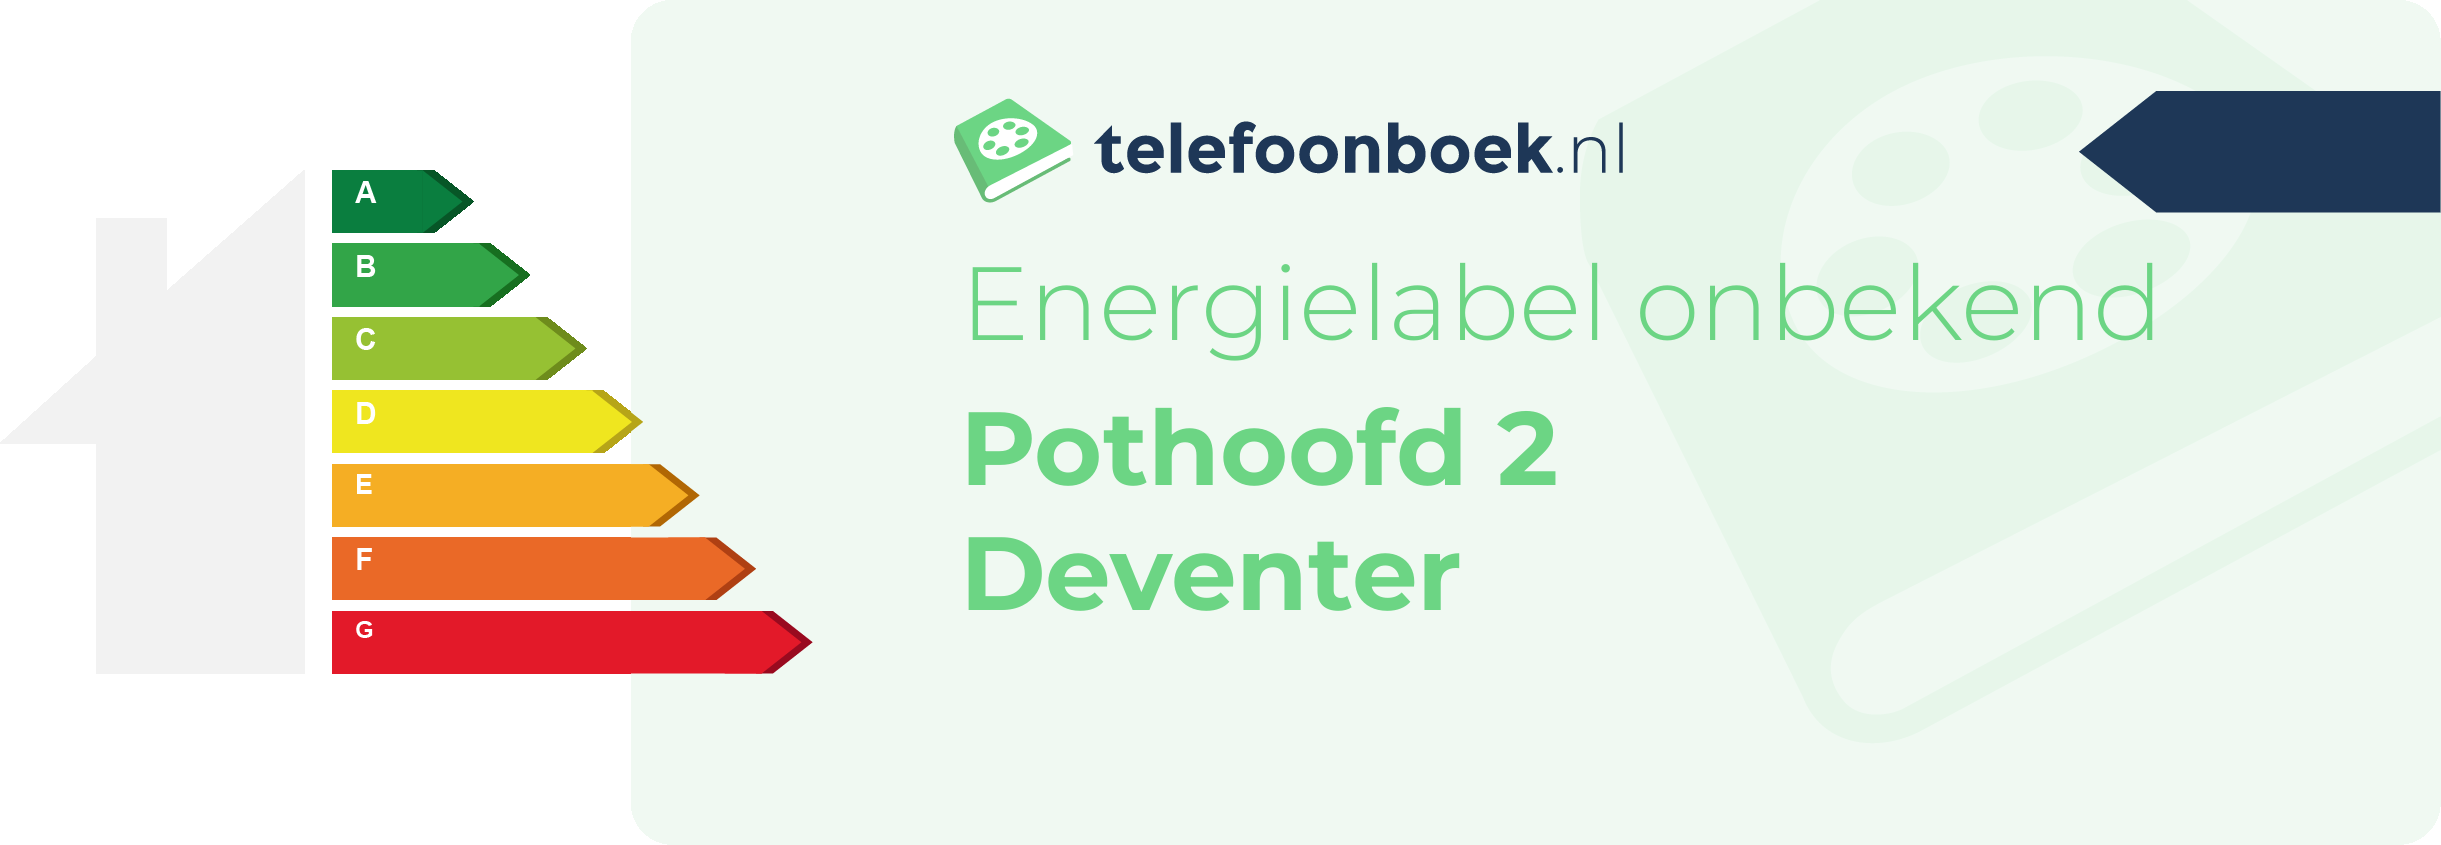 Energielabel Pothoofd 2 Deventer